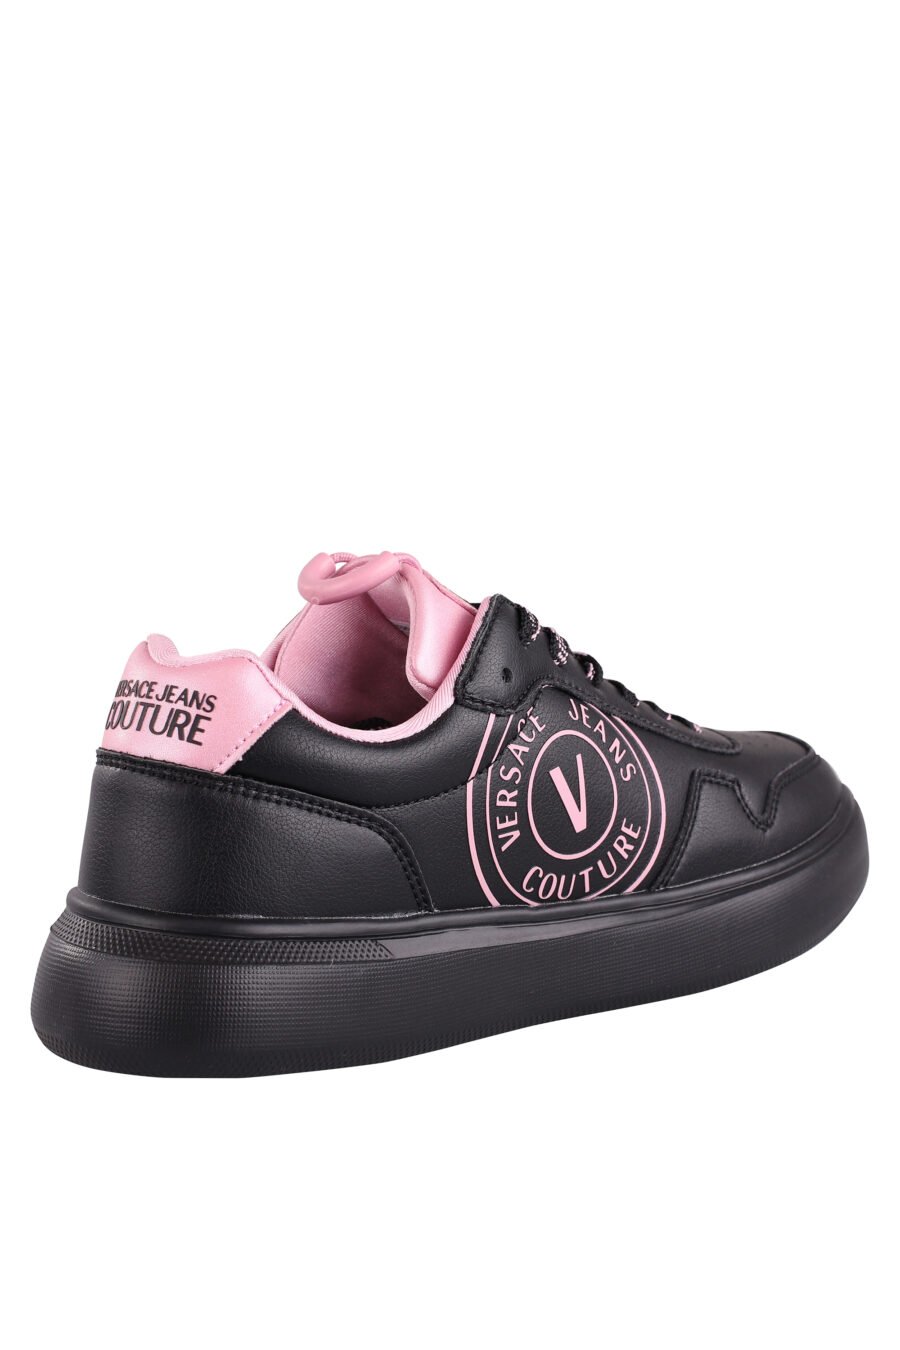 Schwarze Turnschuhe mit Details und rosa Logo - IMG 9061